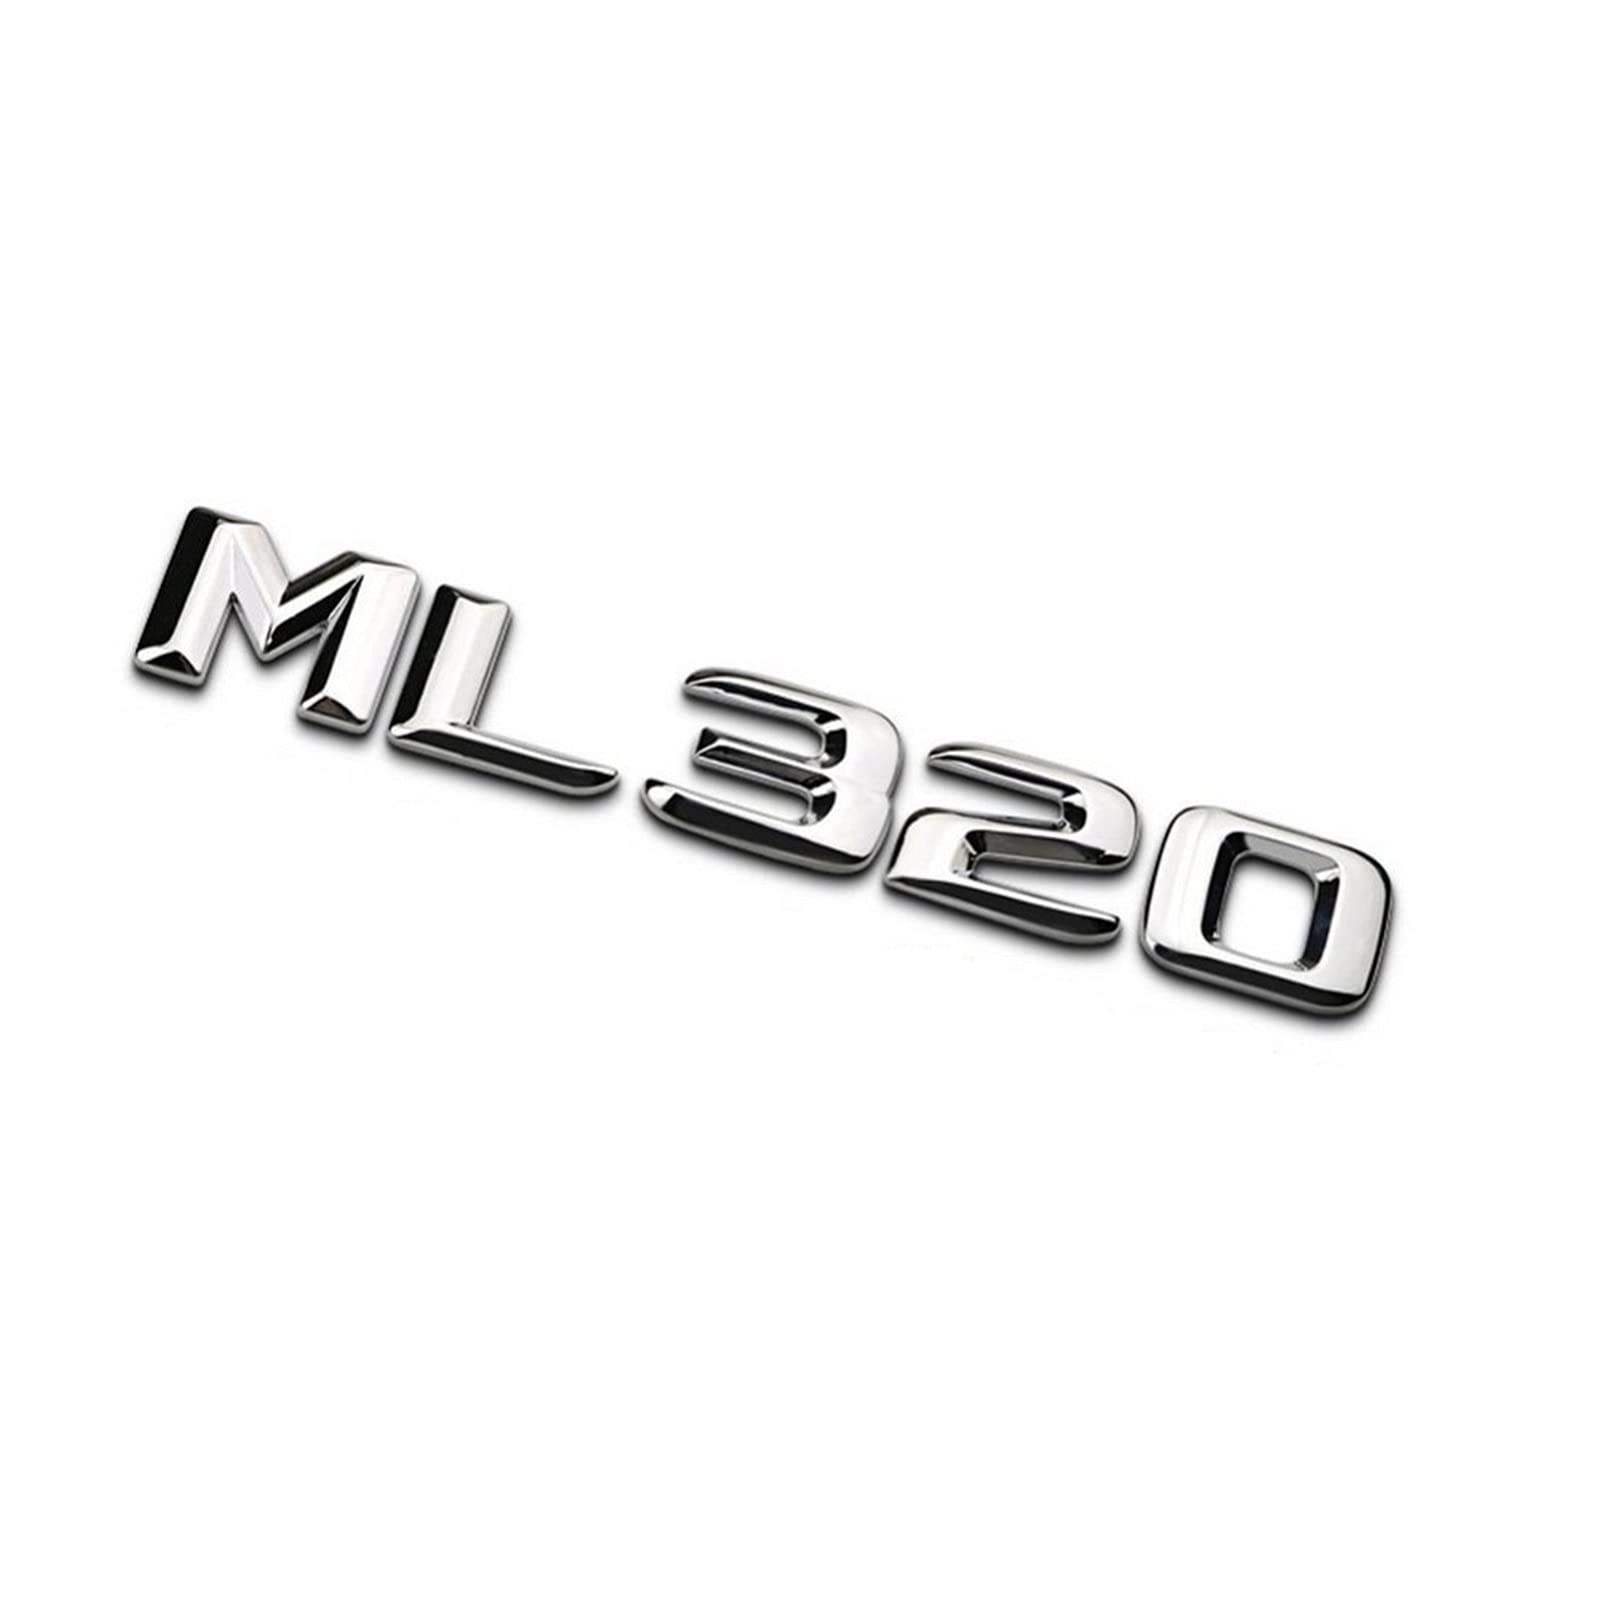 BMINO Chrom glänzendes Silber ML 320" Auto-Kofferraum hinten Buchstaben Wort Abzeichen Emblem Buchstabe Aufkleber Aufkleber kompatibel mit Mercedes Benz ML-Klasse ML320 Logo-Aufkleber von BMINO